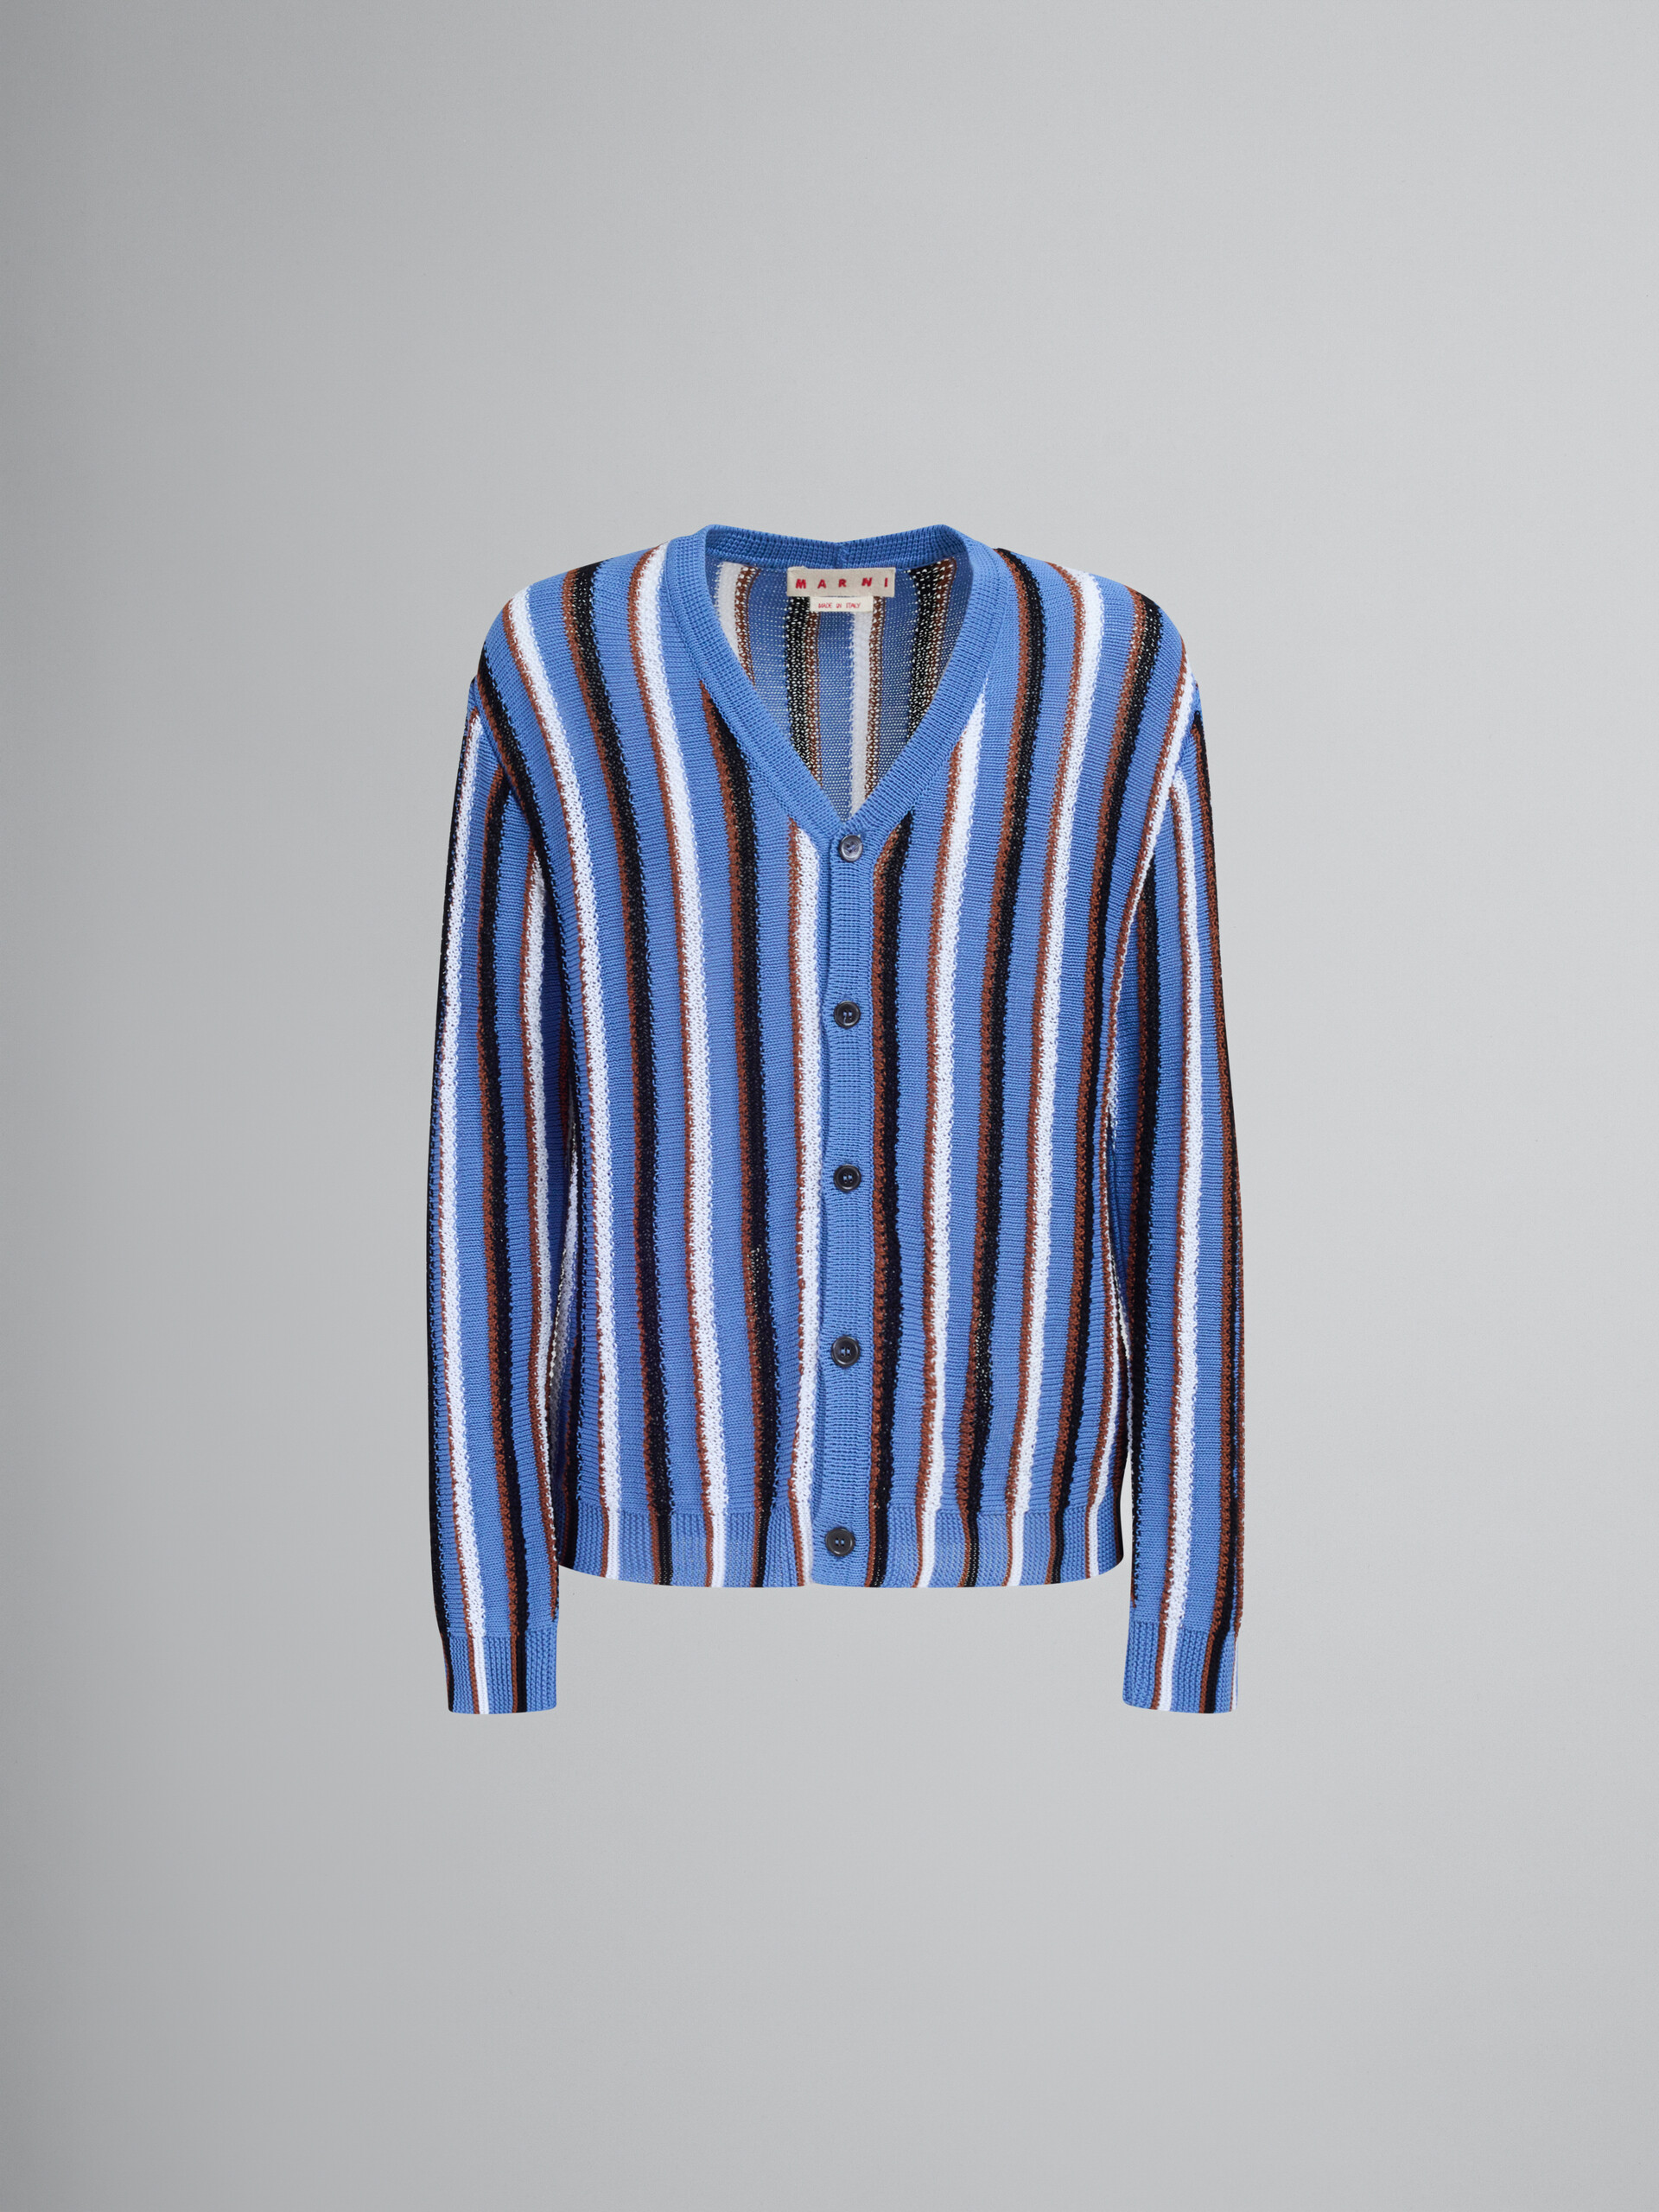 Cardigan en coton bleu avec rayures réalisées au crochet - pulls - Image 1